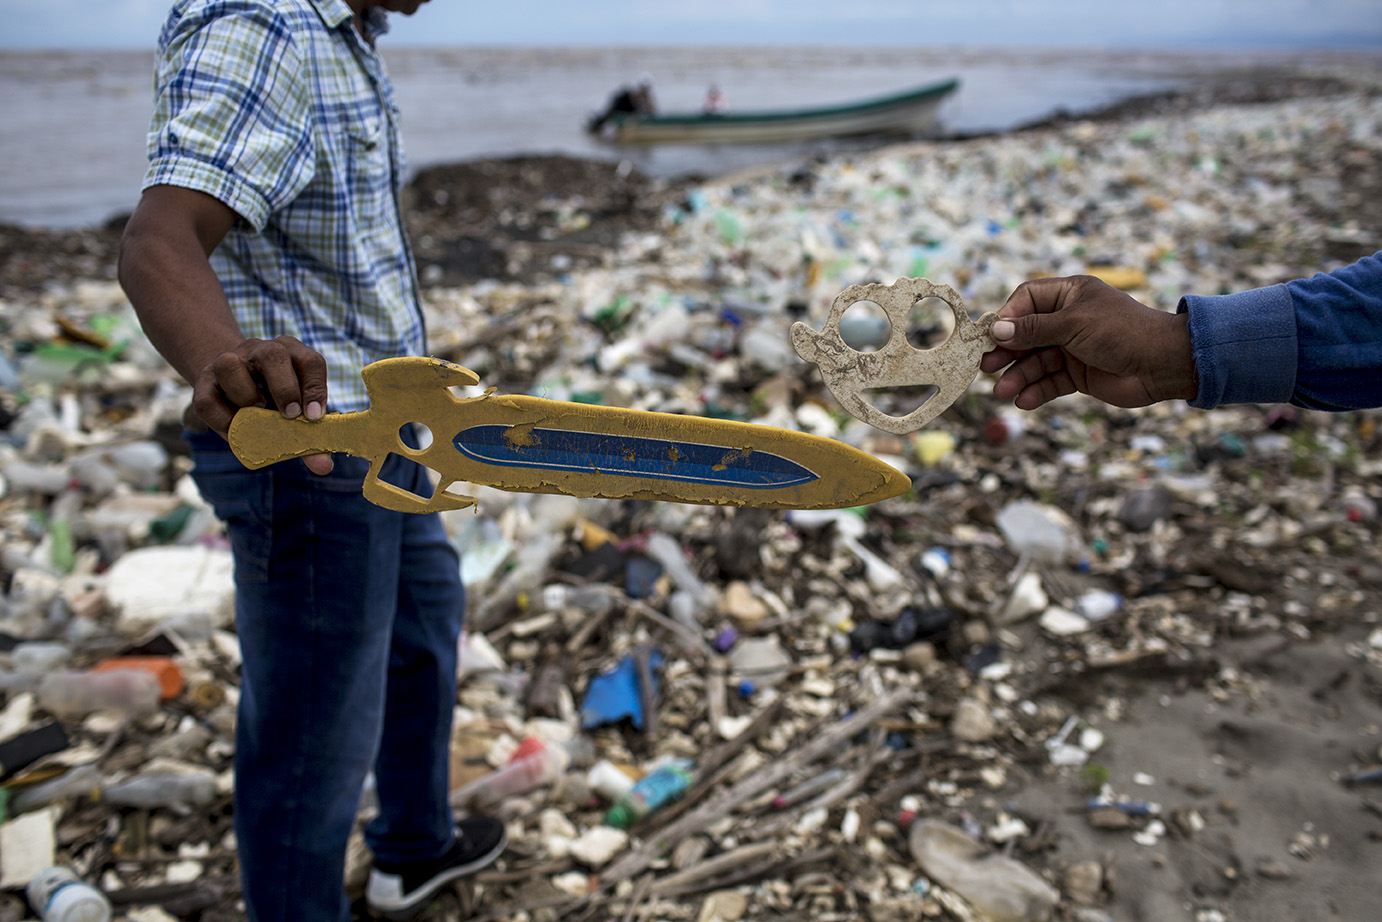 Un par de objetos insólitos encontrados en el basurero de plásticos, en la playa donde desemboca el río Motagua. Simone Dalmasso